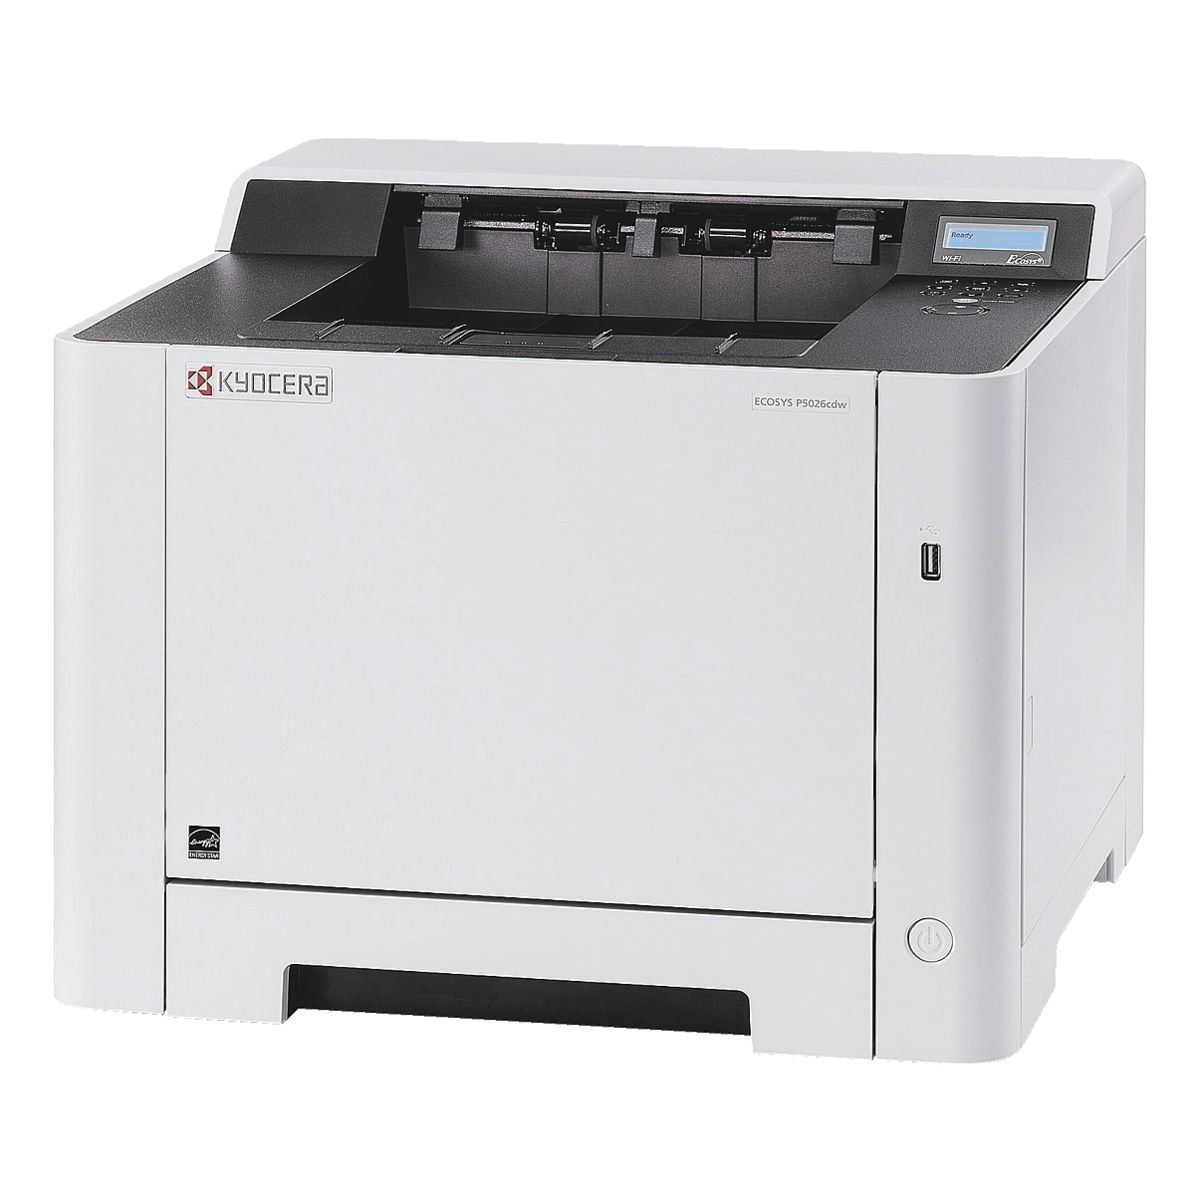 Kyocera P5026cdw Laserdrucker, A4 Farb-Laserdrucker, 1200 x 1200 dpi, mit WLAN und LAN